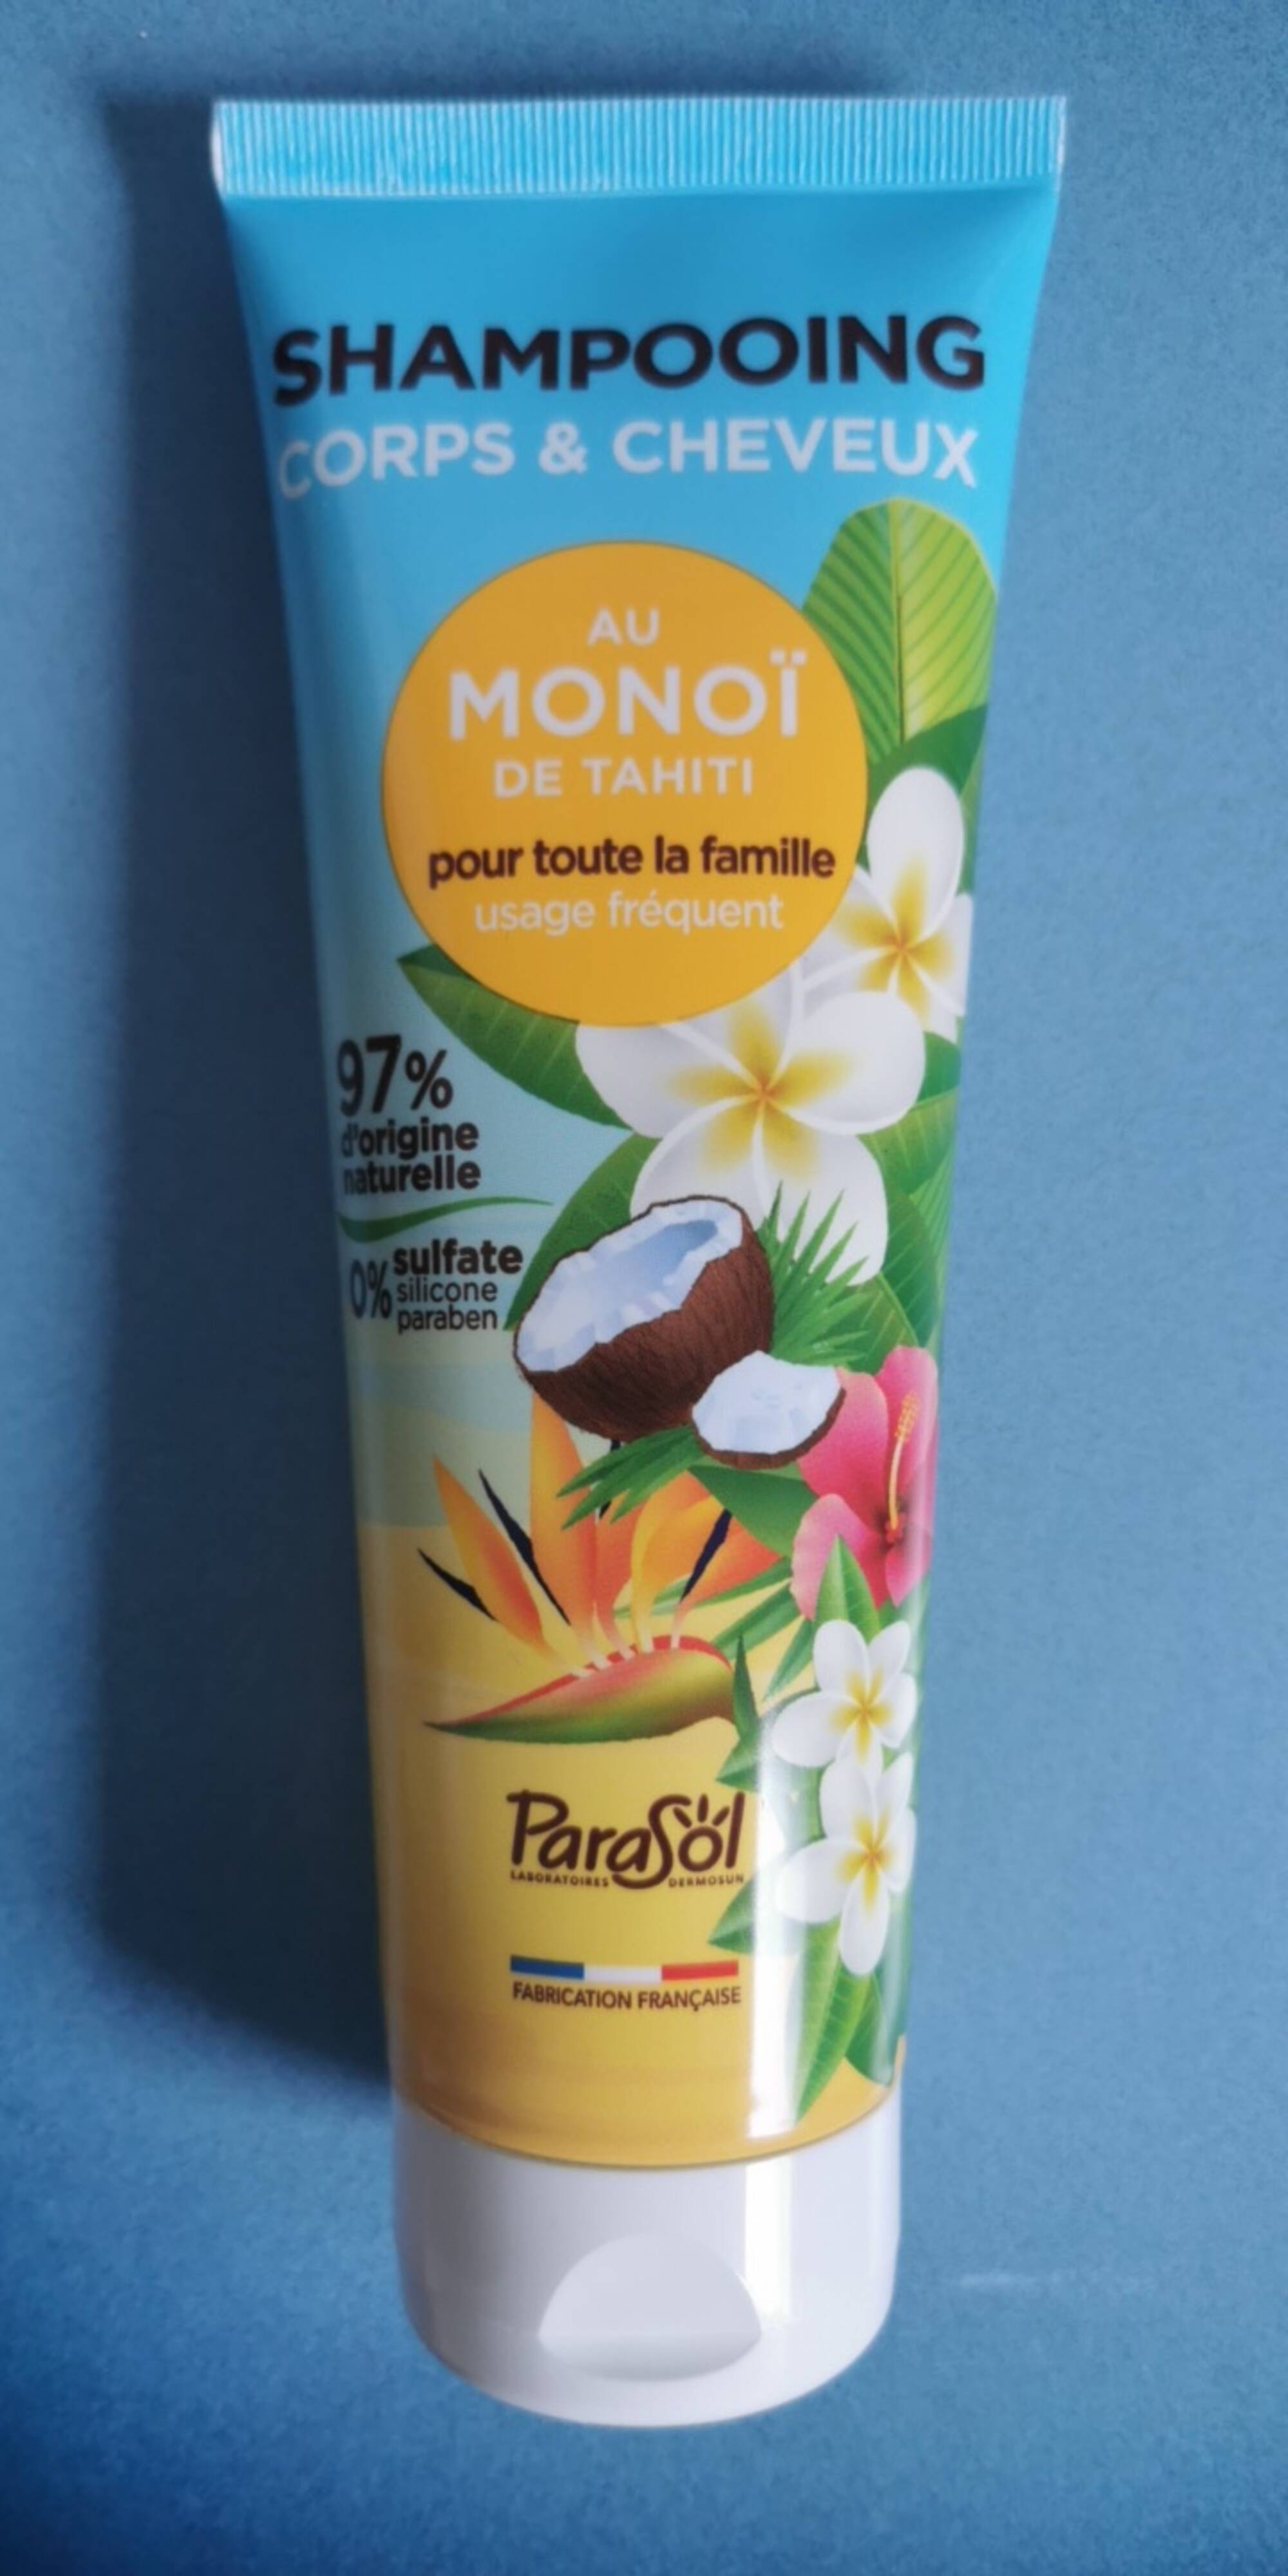 PARASOL - Shampooing corps & cheveux au Monoï de Tahiti